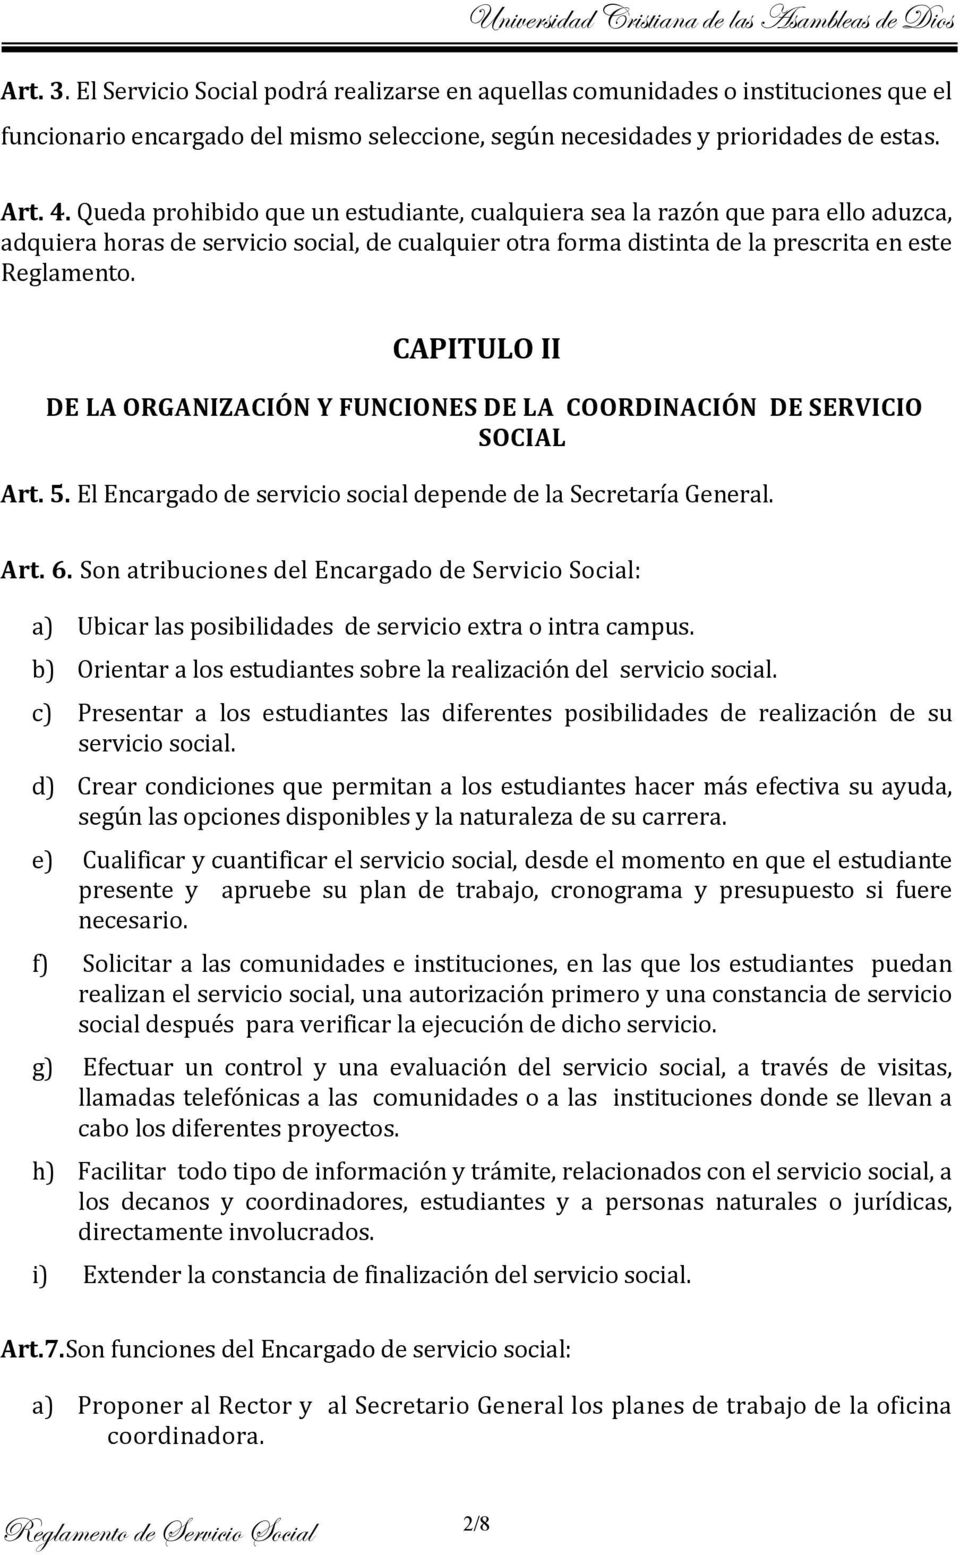 CAPITULO II DE LA ORGANIZACIÓN Y FUNCIONES DE LA COORDINACIÓN DE SERVICIO SOCIAL Art. 5. El Encargado de servicio social depende de la Secretaría General. Art. 6.